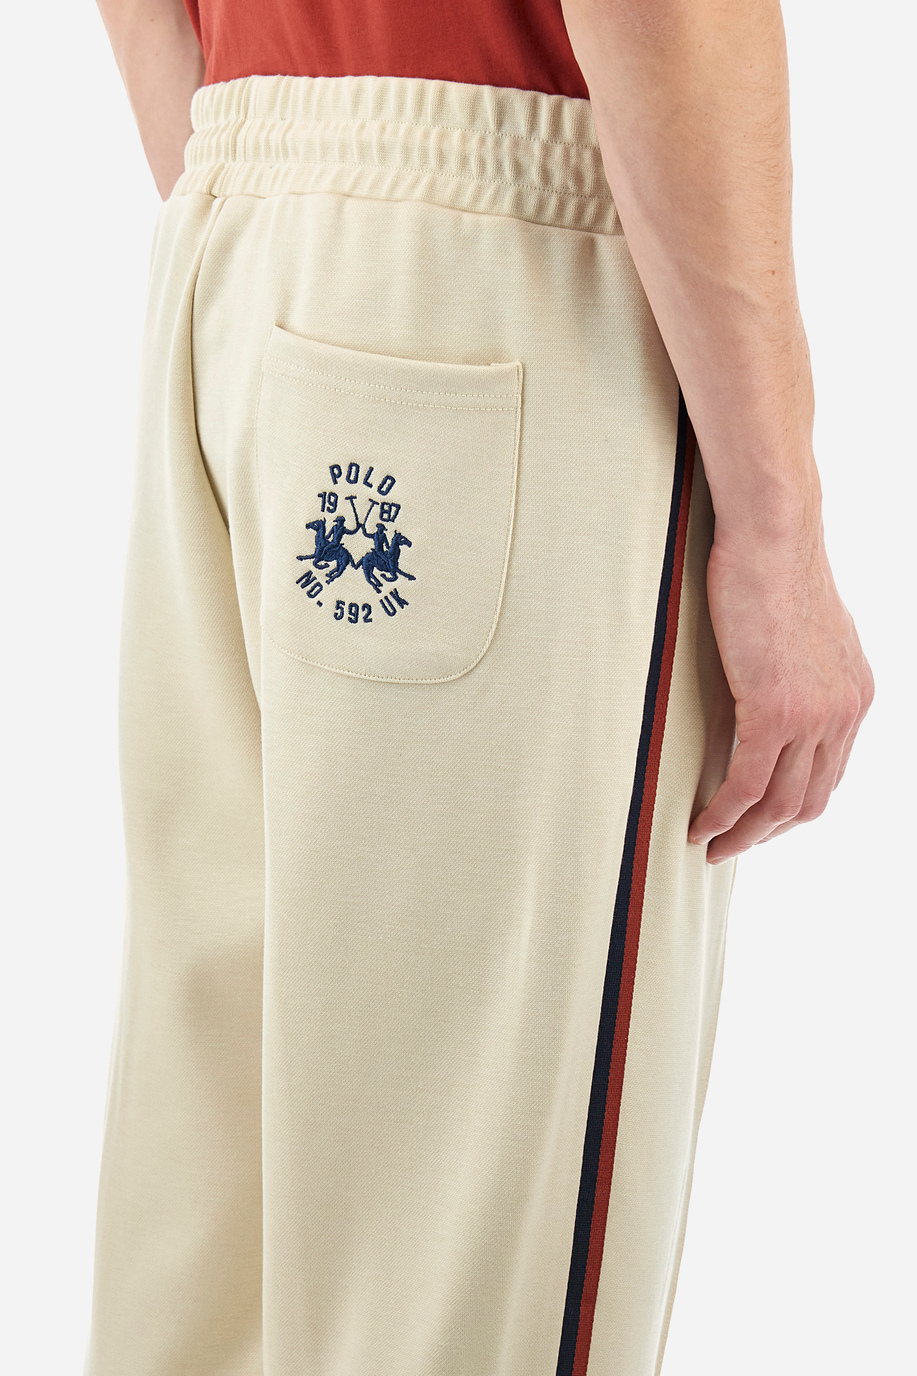 Pantalon de jogging homme coupe classique - Yechudi - Trousers | La Martina - Official Online Shop